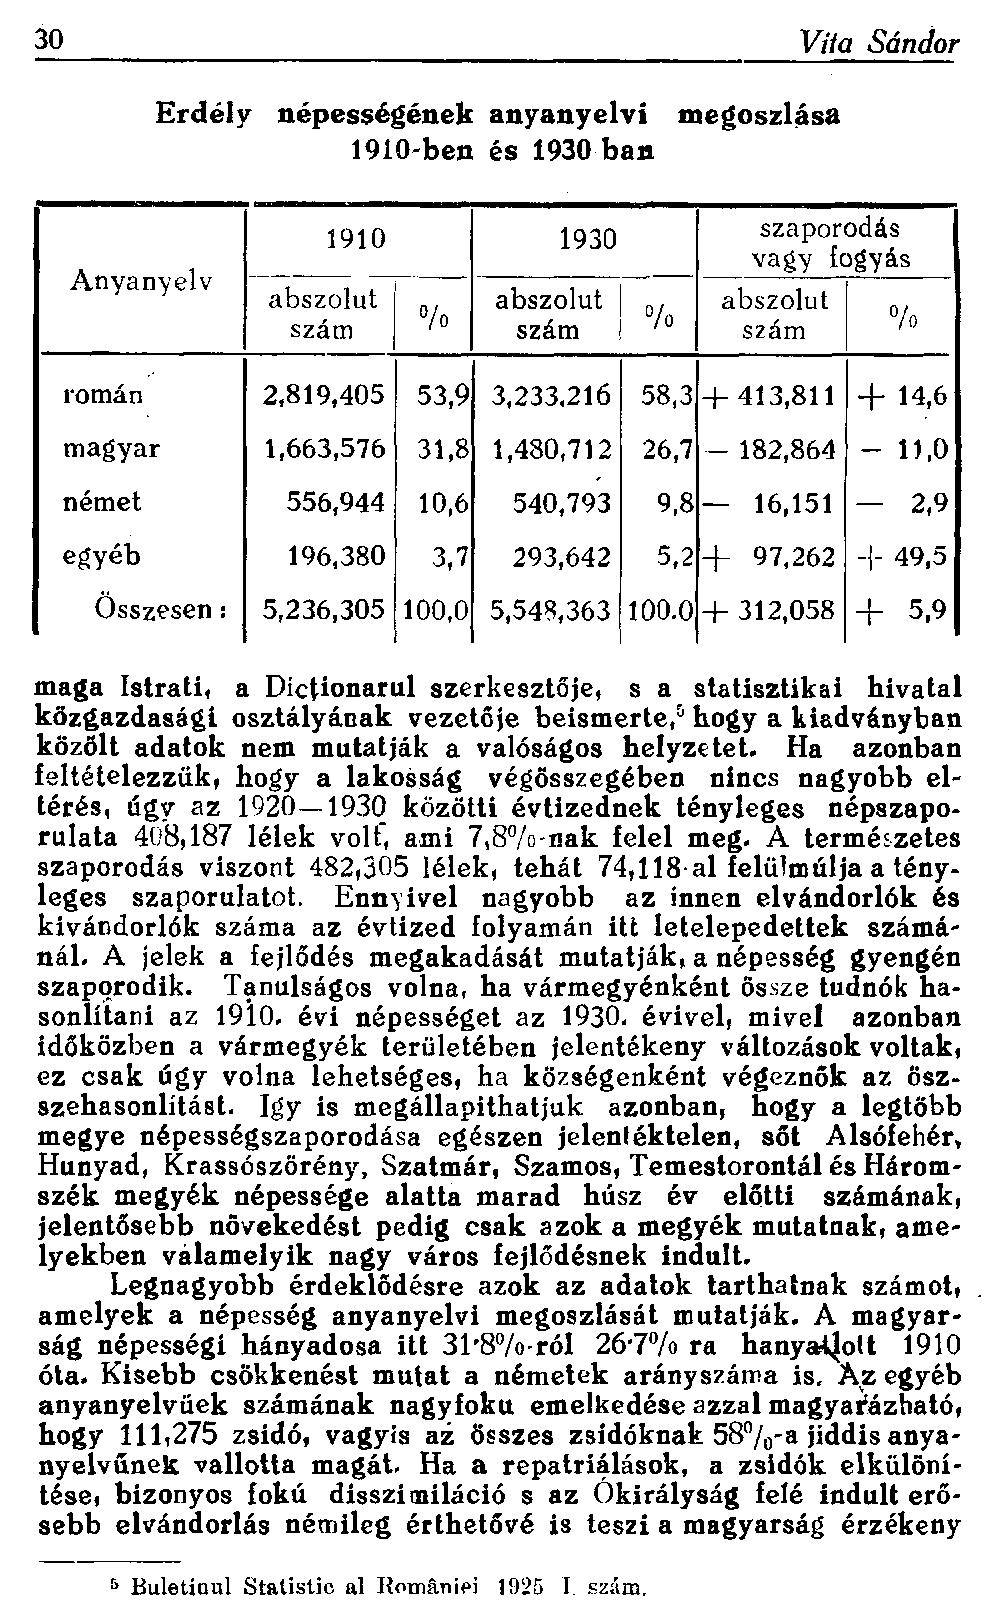 30 Vita Sándor Erdély népességének anyanyelvi megoszlása 1910-ben és 1930-ban Anyanyelv abszolut szám 1910 1930 % abszolut szám % szaporodás vagy fogyás abszolut szám % román 2,819,405 53,9 3,233,216